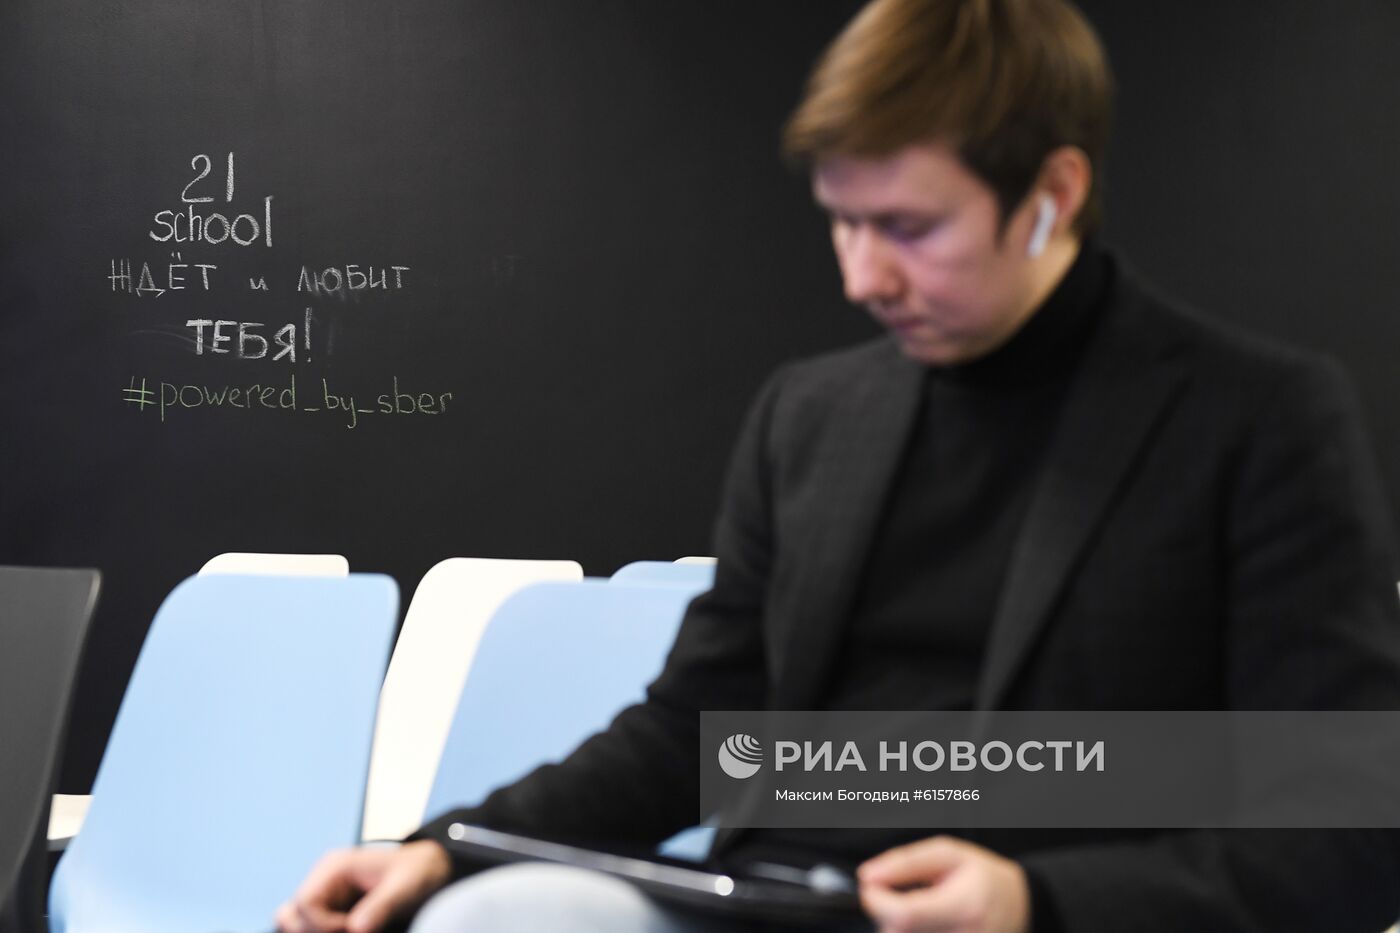 Образовательный IT-проект "Школа-21" в Казани